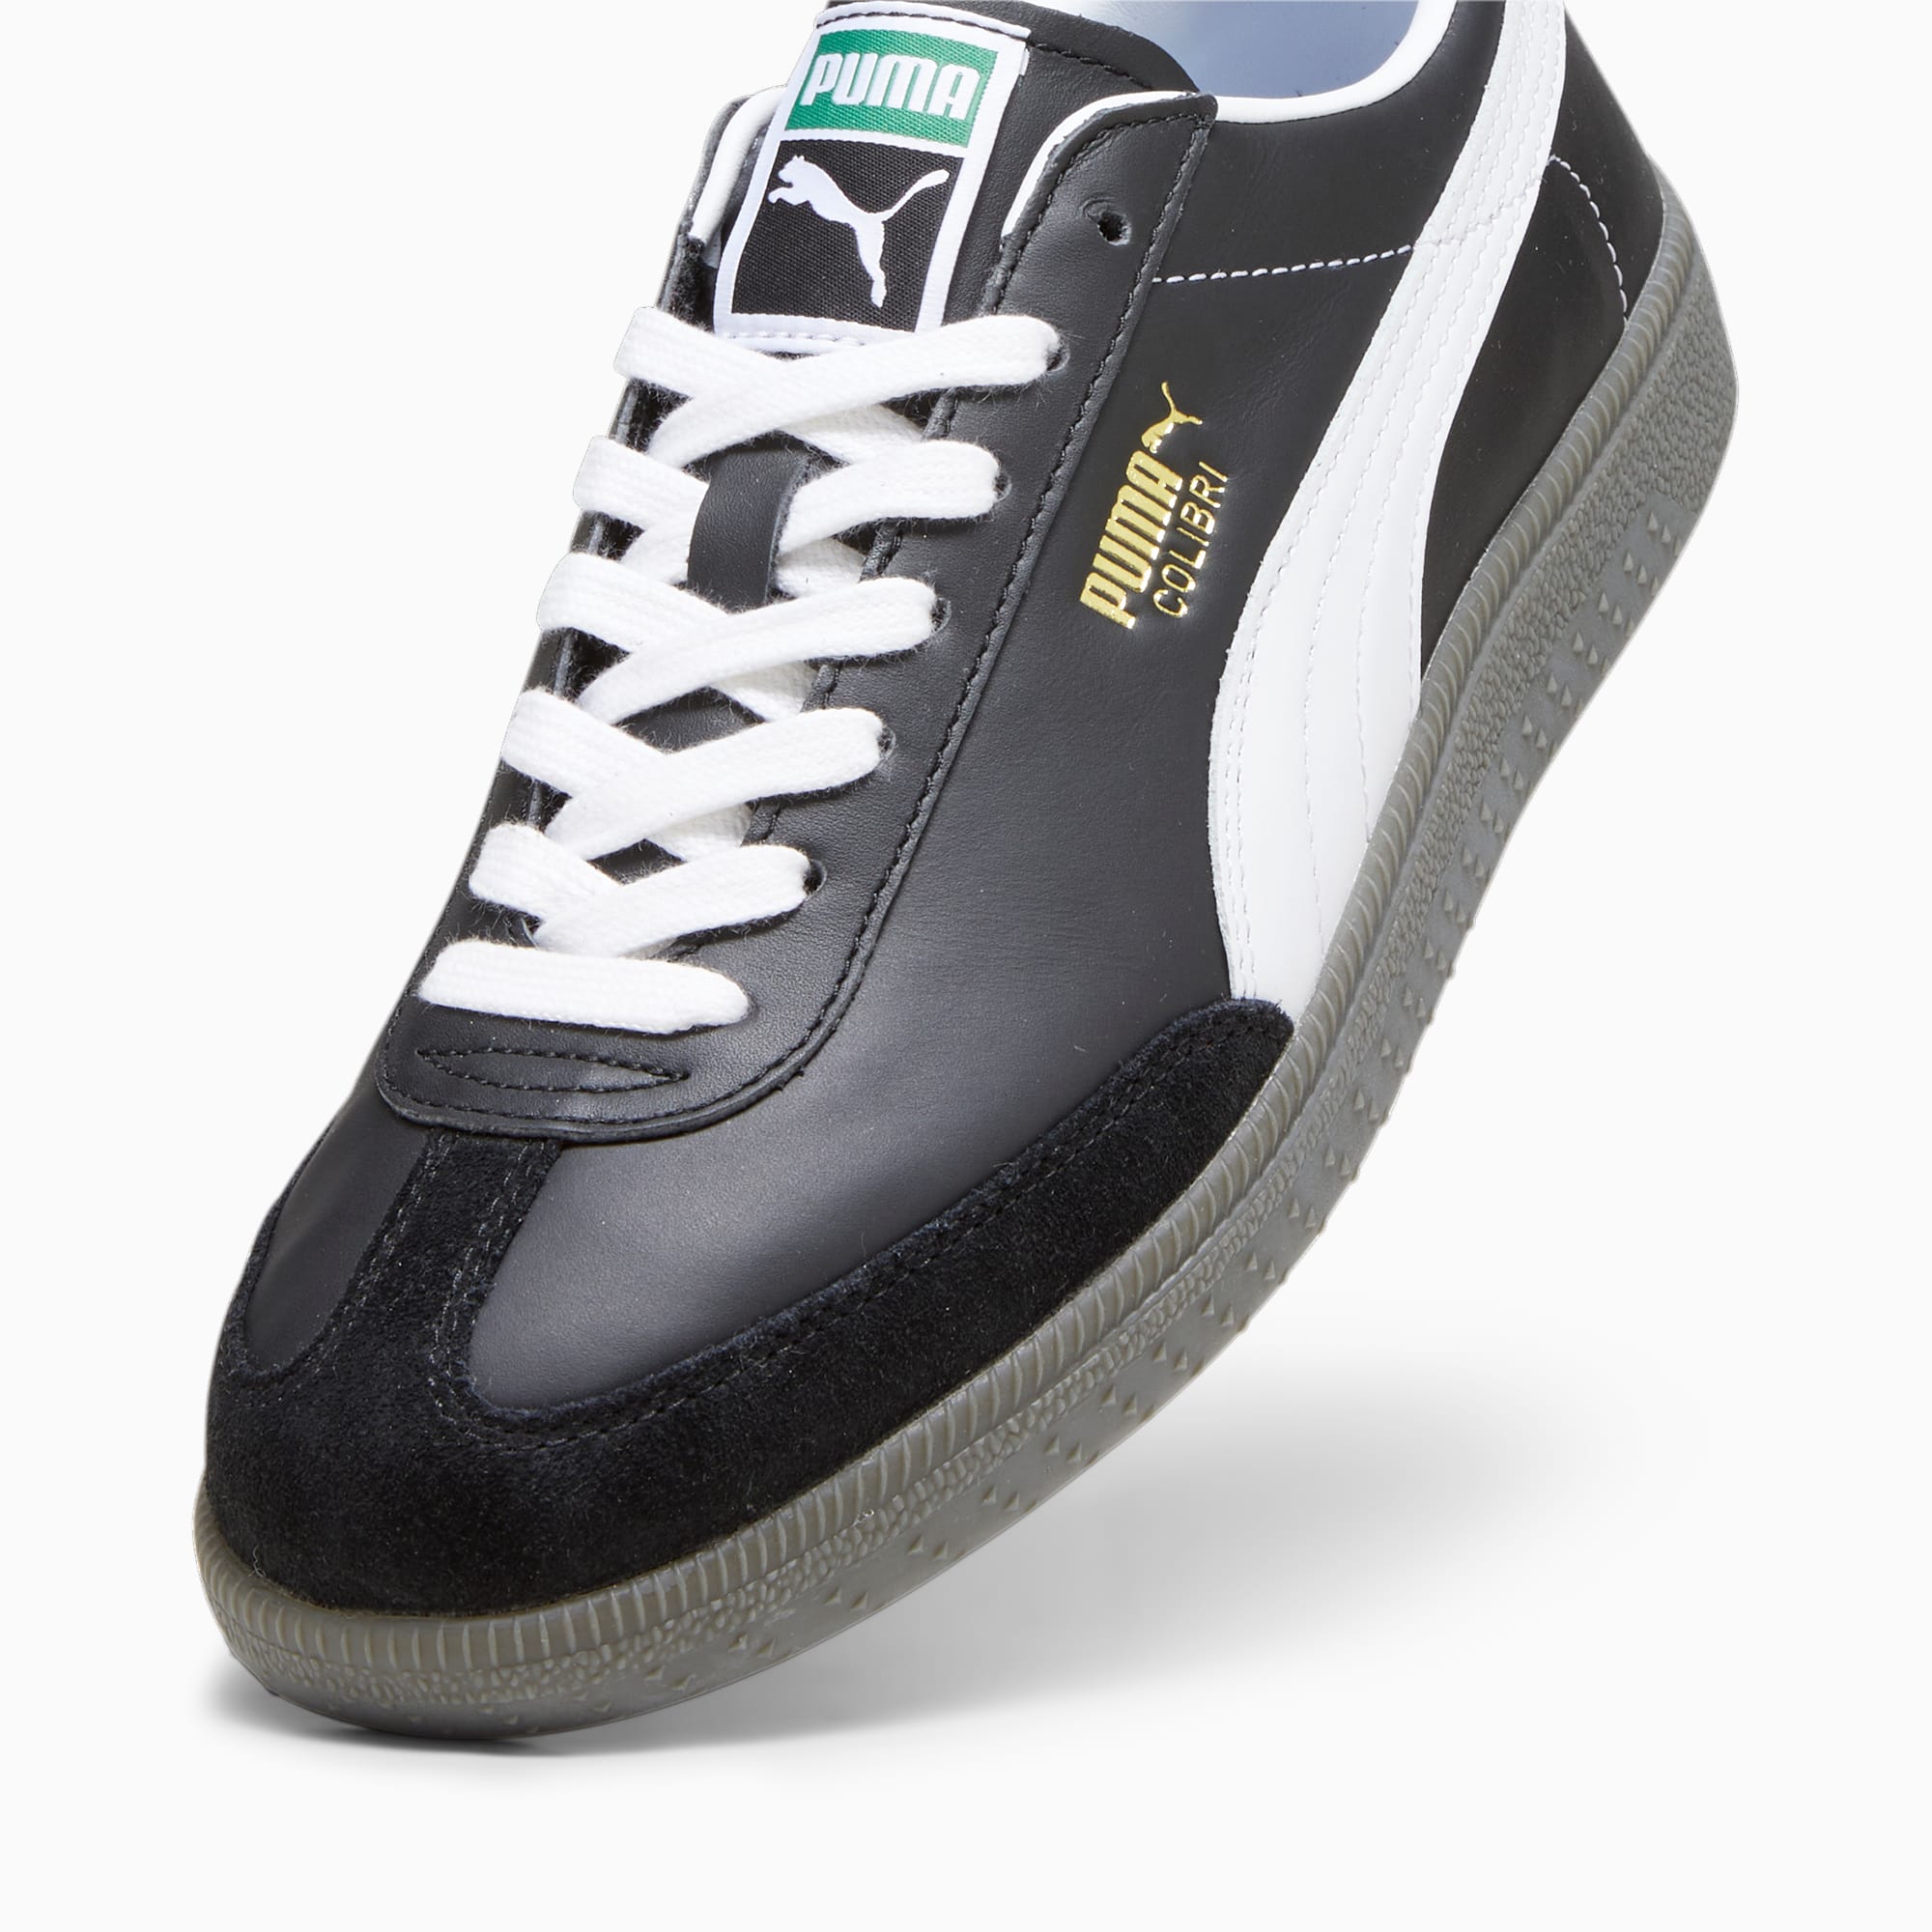 PUMA Colibri OG Sneakers Schuhe, Schwarz/Weiß, Größe: 36, Schuhe